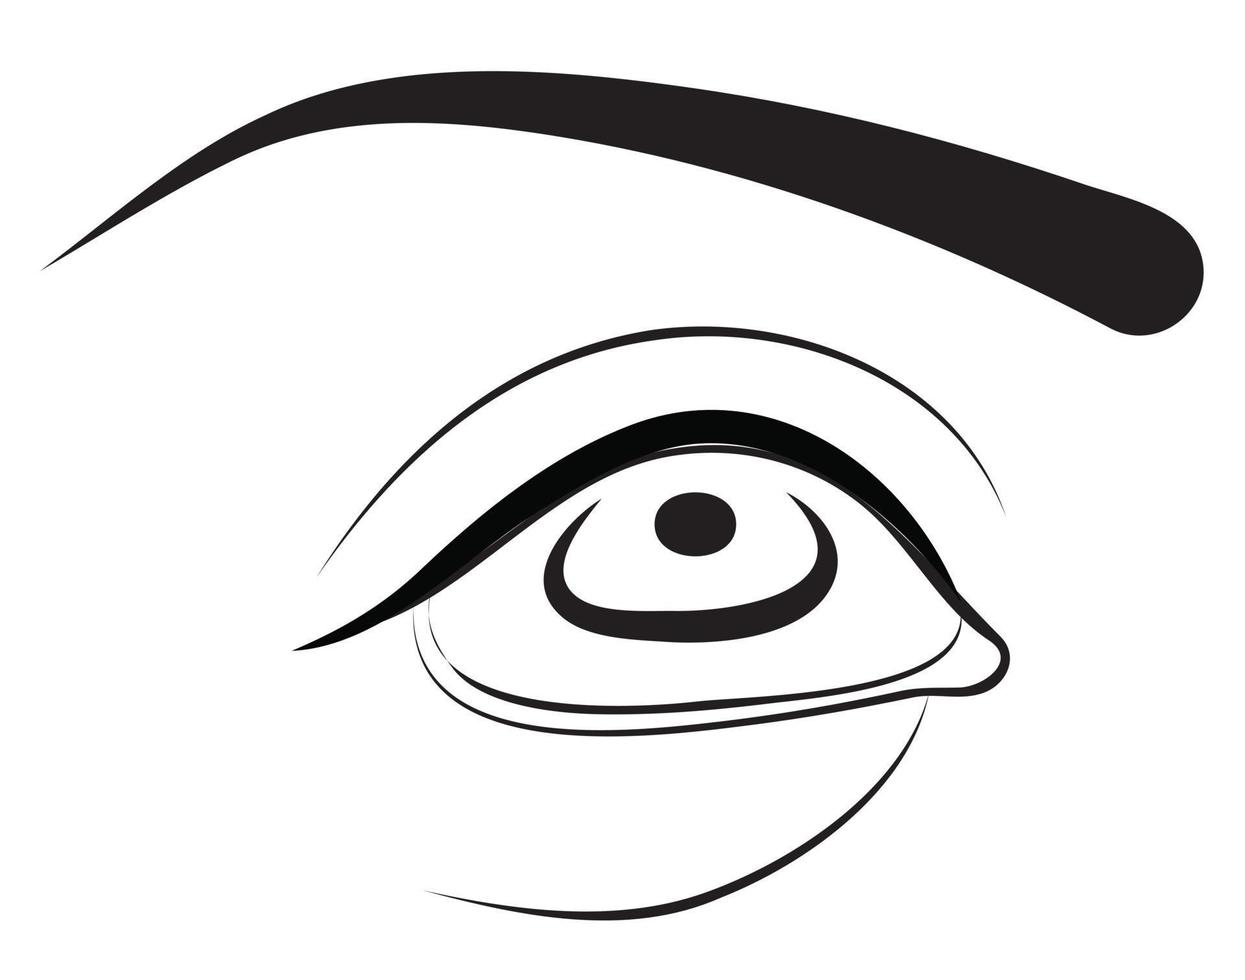 œil humain. illustration vectorielle isolée sur fond blanc. vecteur